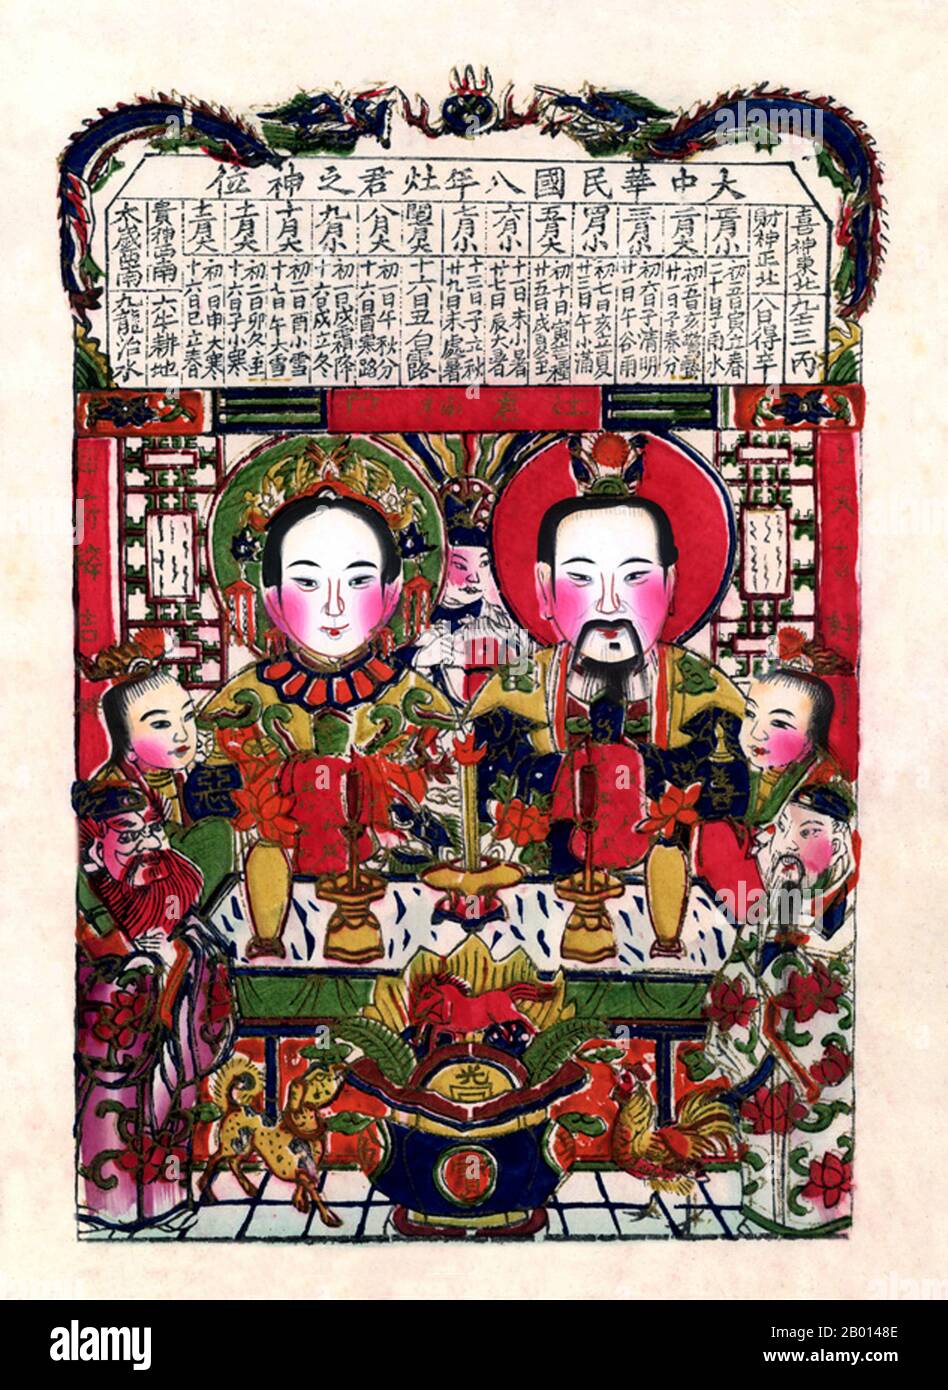 China: El dios de la cocina Zao Jun (' amo del tove '), también llamado Zao Shen (' dios del tove ' o ' espíritu del tove '), junto con su esposa. Grabado de madera, c. 1930-1939. En la religión y la mitología populares chinas, el dios de la cocina Zao Jun es el más importante de una plétora de dioses domésticos chinos que protegen el hogar y la familia. Se cree que en el vigésimo tercer día del duodécimo mes lunar, justo antes del Año Nuevo Chino, regresa al Cielo para reportar las actividades de cada hogar durante el año pasado al Emperador de Jade, quien recompensa o castiga a una familia basada en este informe anual. Foto de stock